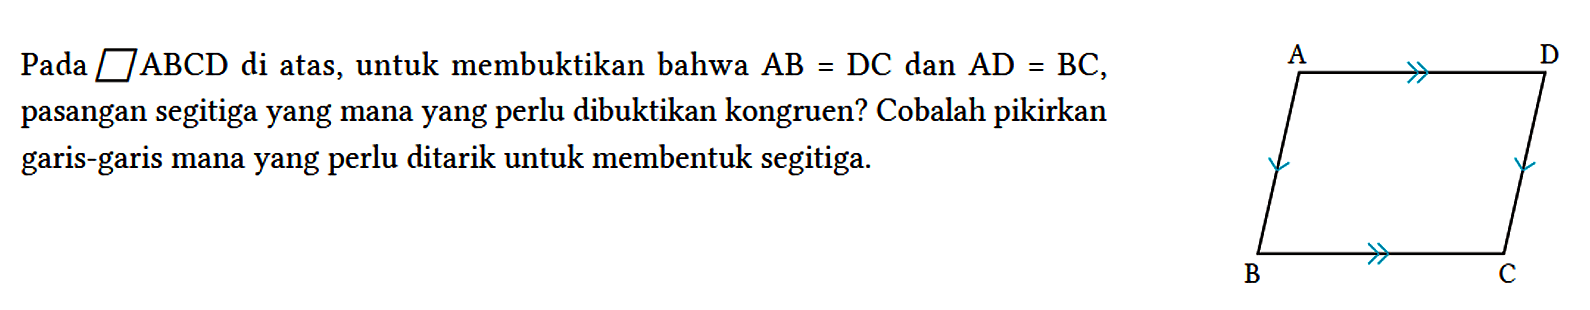 Pada jajargenjang ABCD di atas, untuk membuktikan bahwa AB=DC dan AD=BC, pasangan segitiga yang mana yang perlu dibuktikan kongruen? Cobalah pikirkan garis-garis mana yang perlu ditarik untuk membentuk segitiga. A D B C